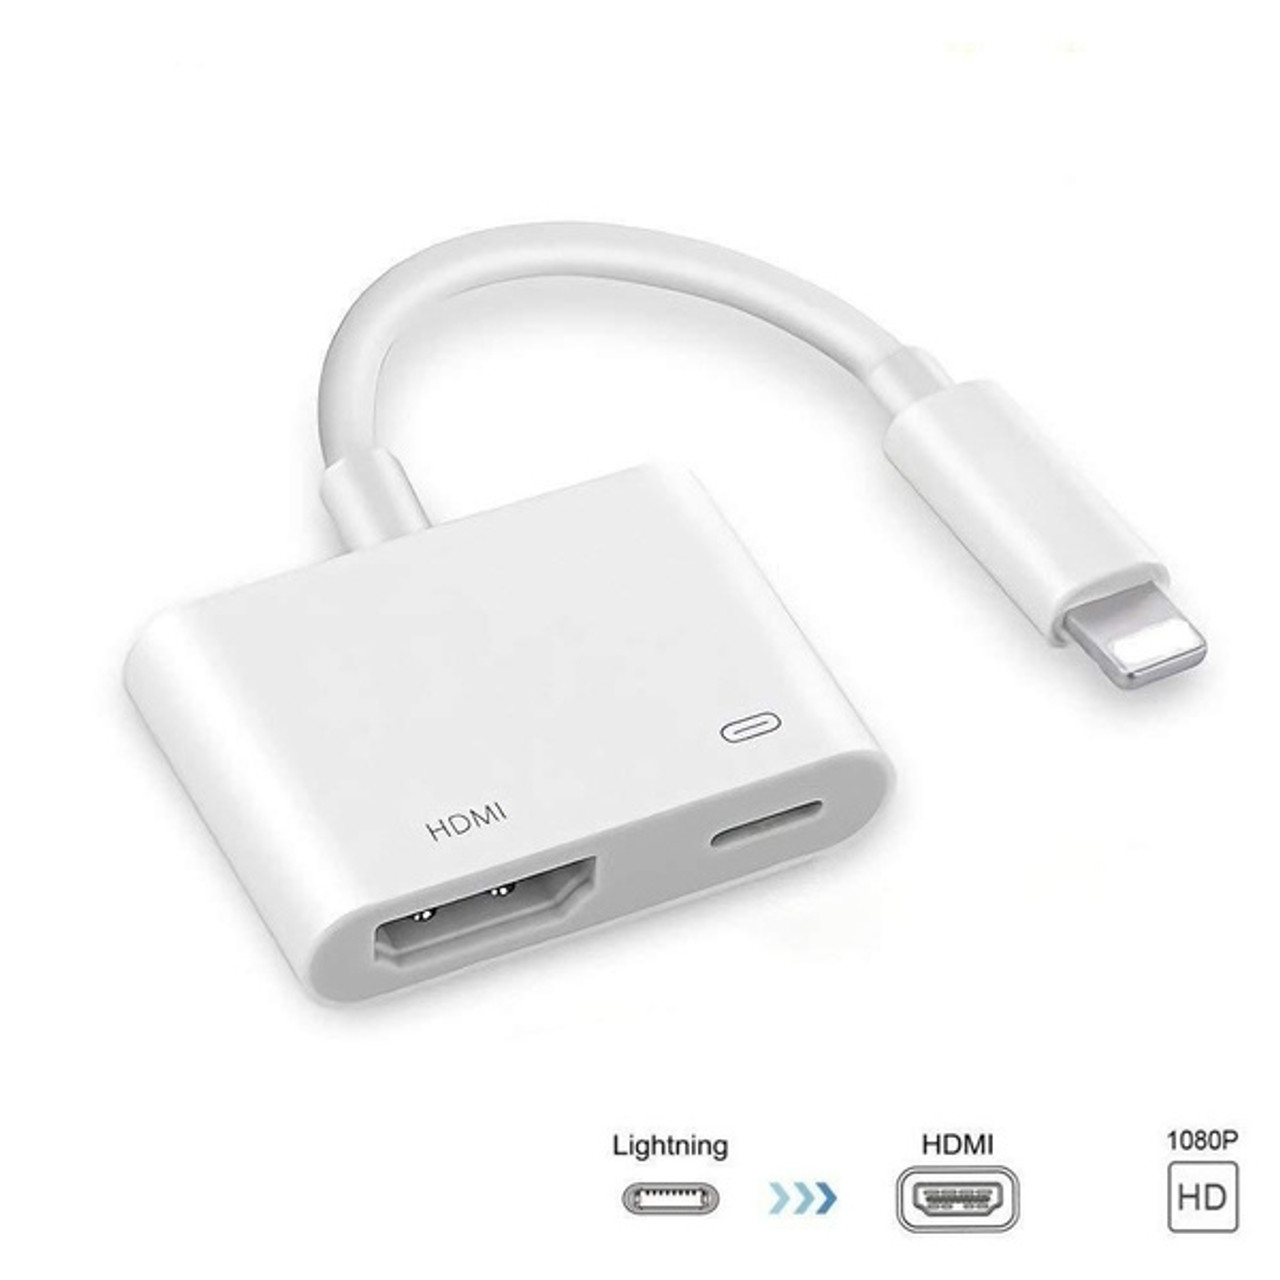 Apple Lightning to HDMI/Lightning Digital AV Adapter